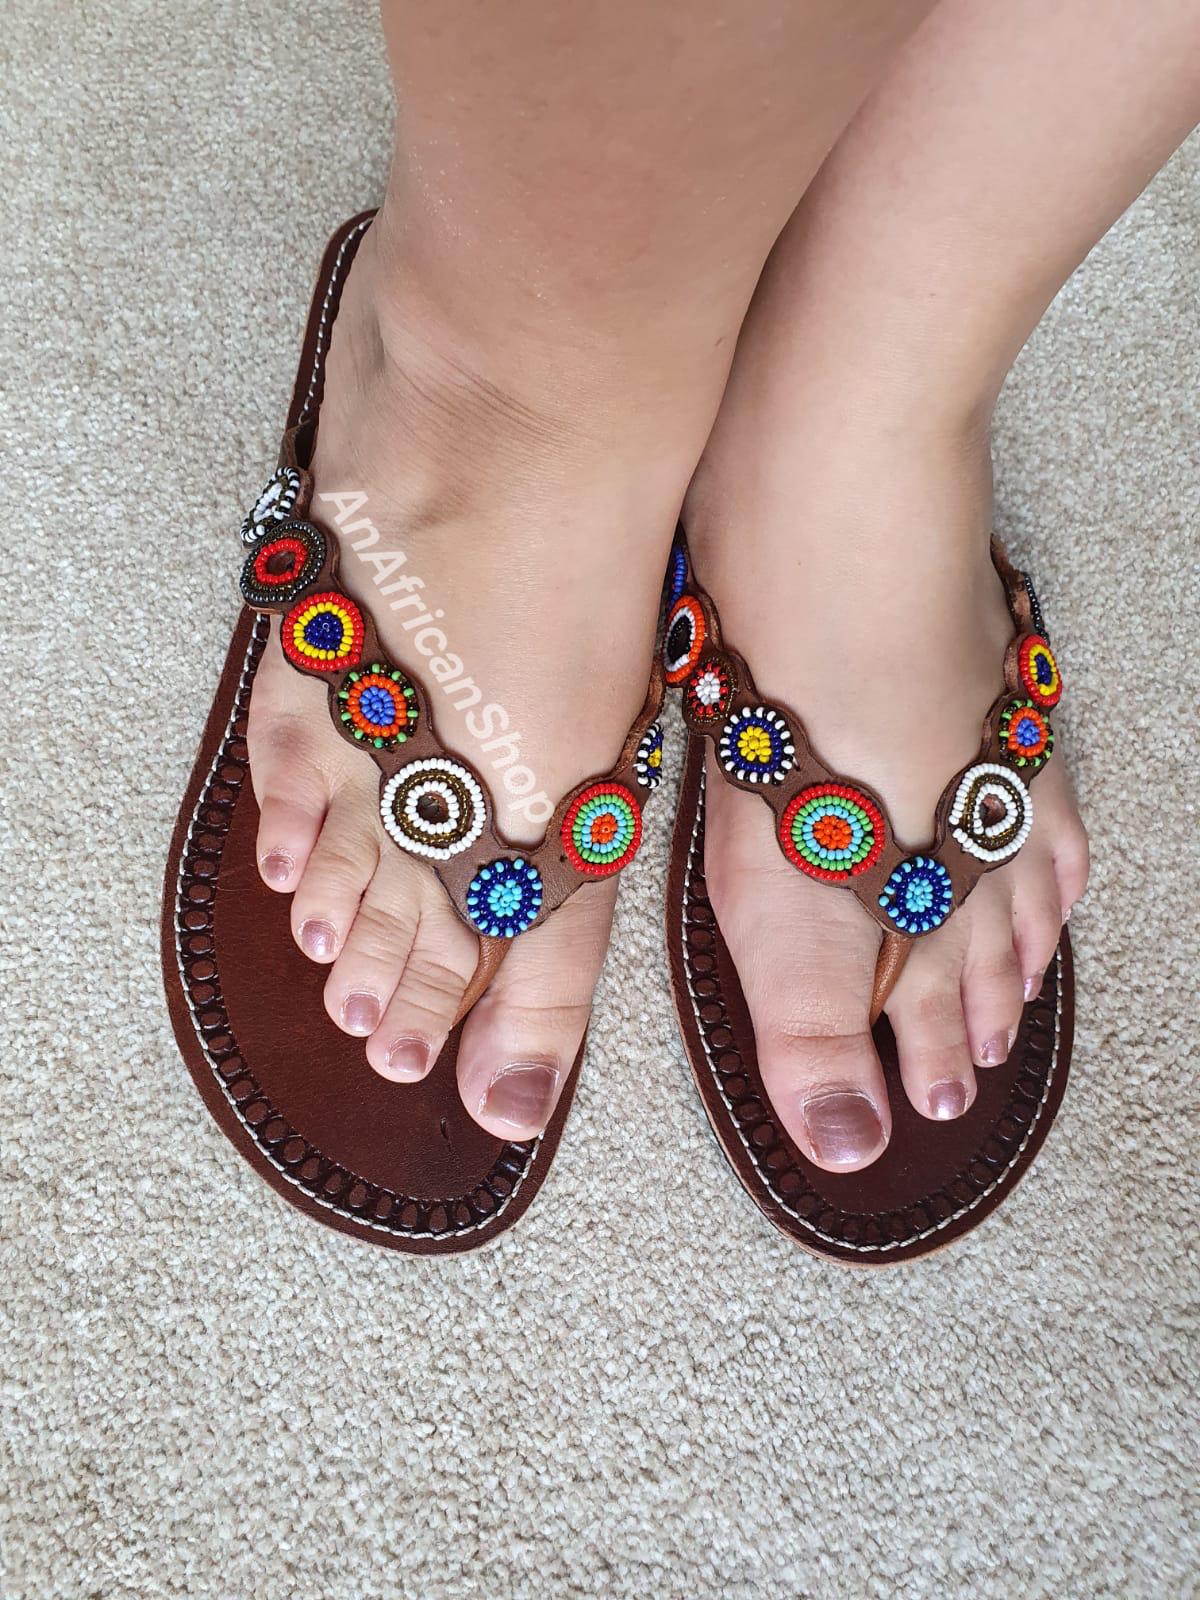 Sandals – An African Shop